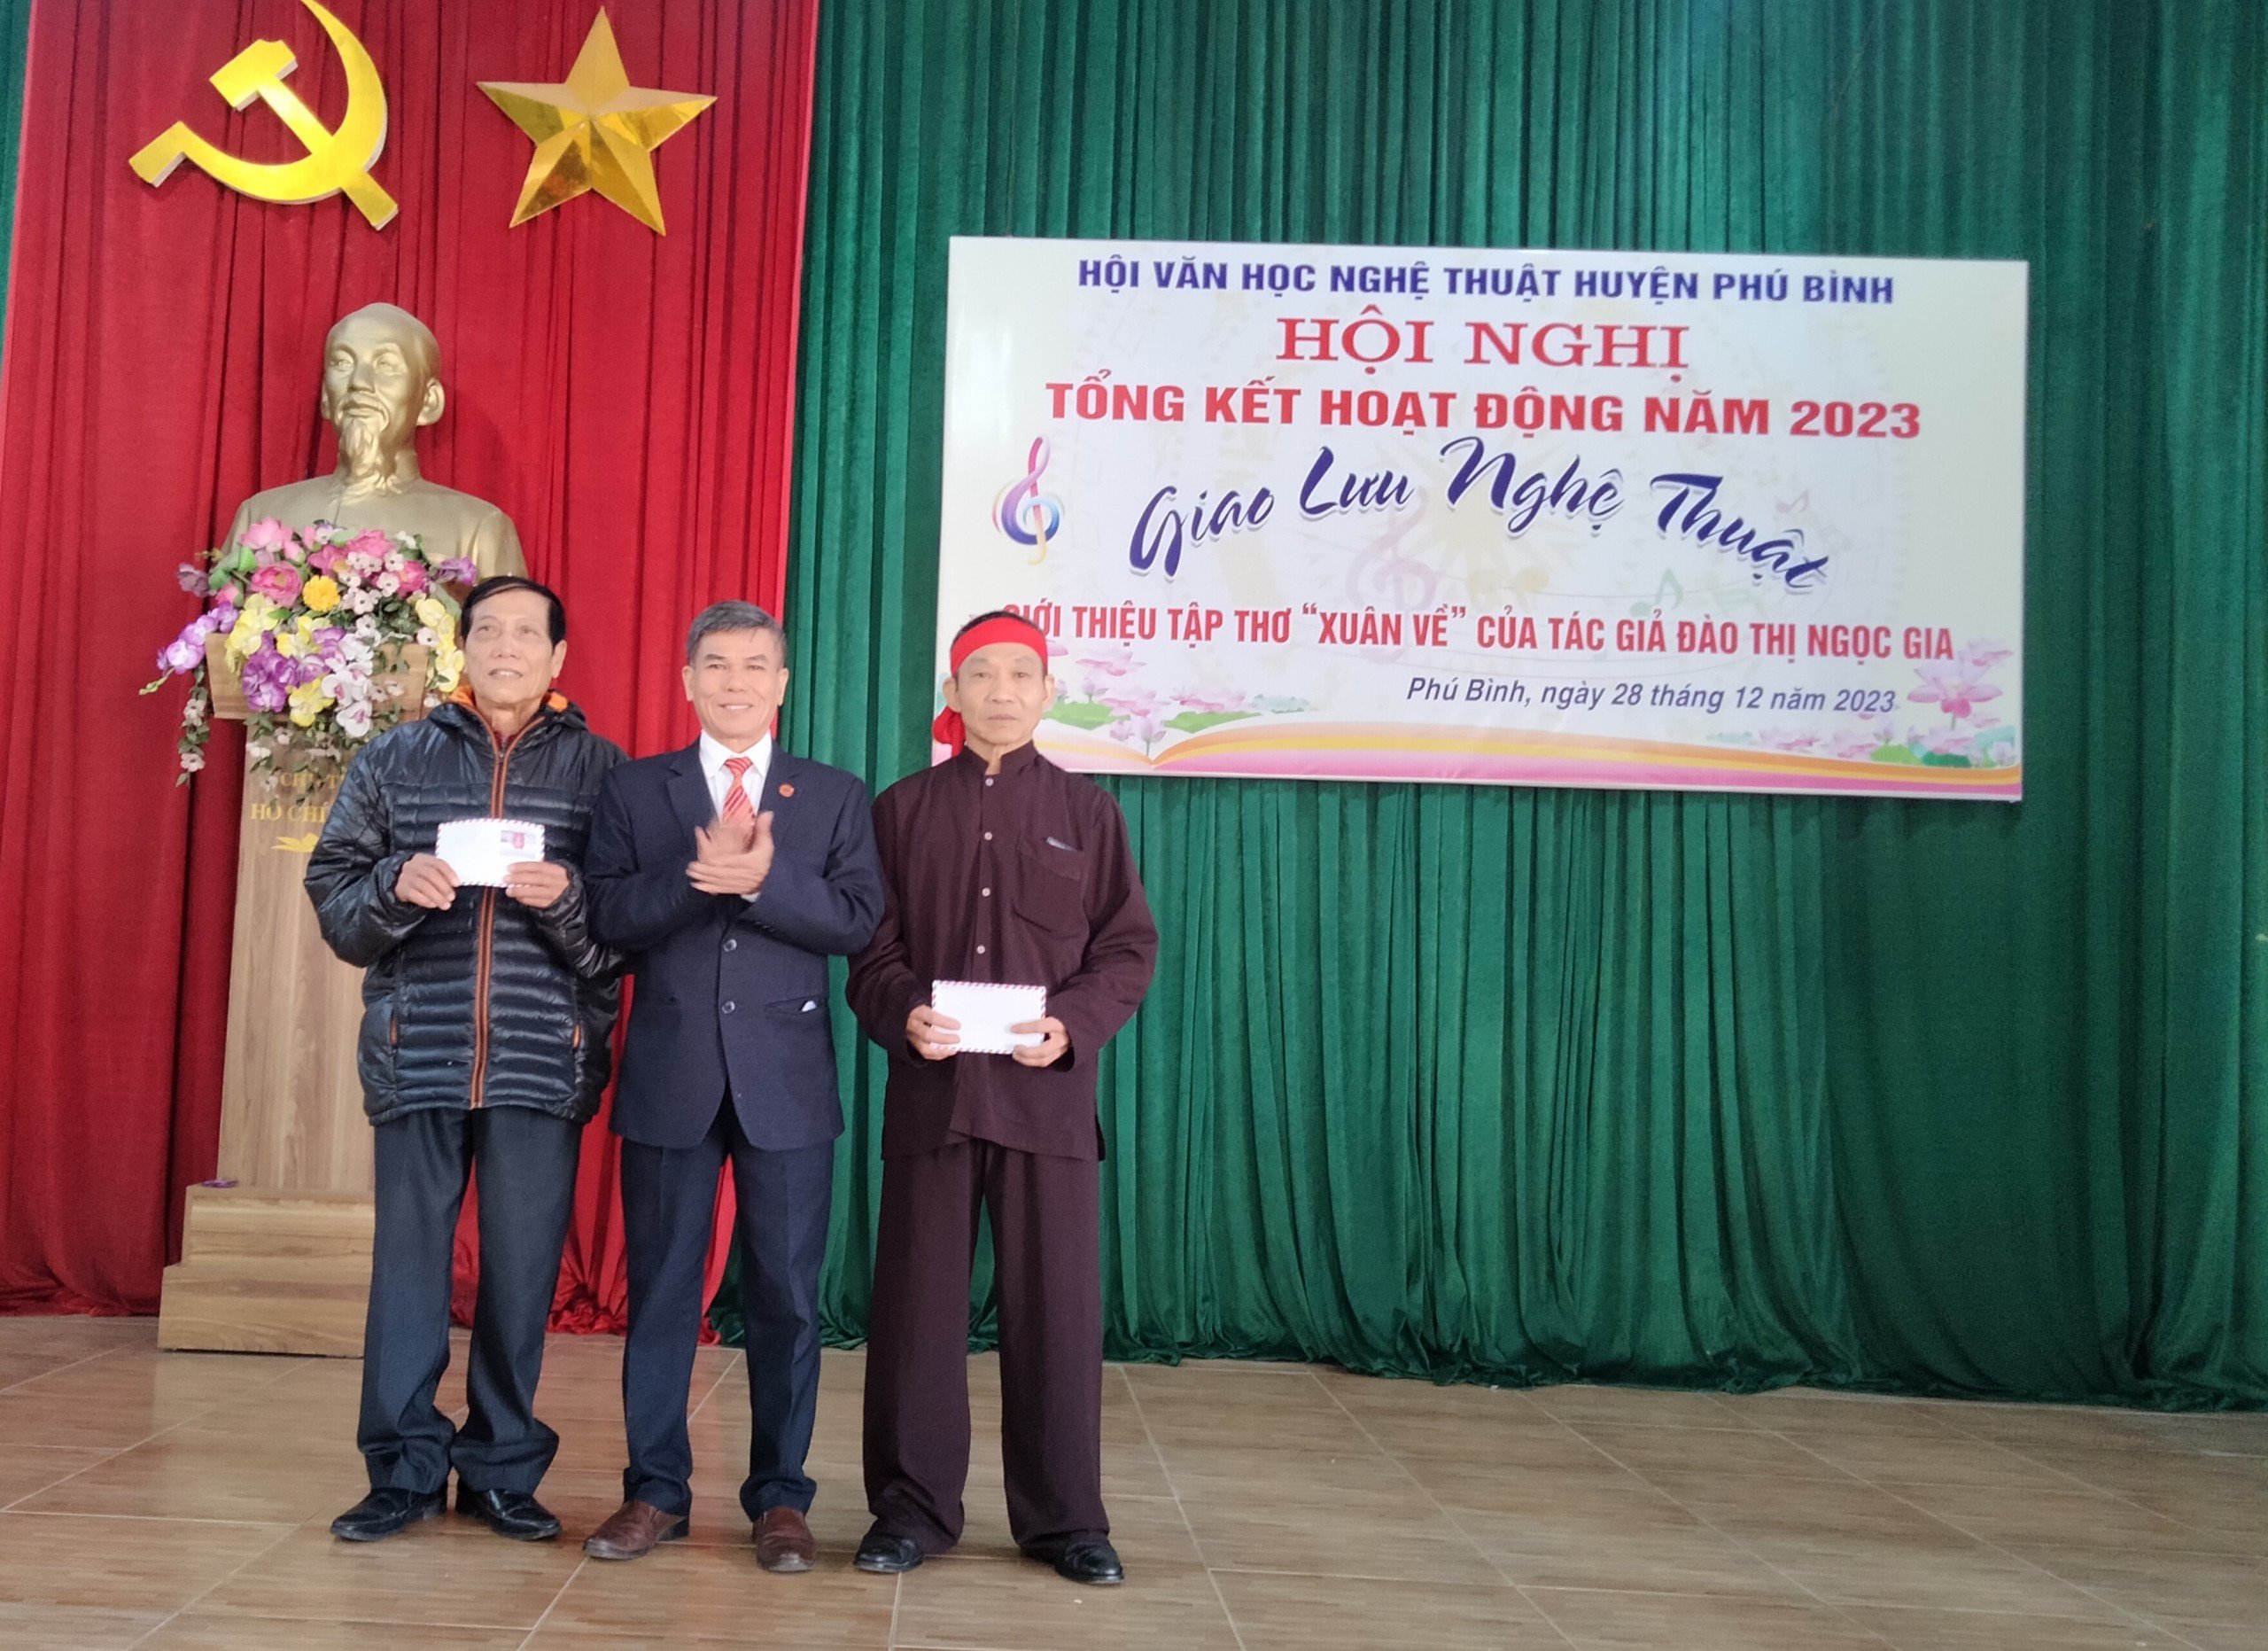 Hội Văn học nghệ thuật huyện Phú Bình tổng kết công tác năm